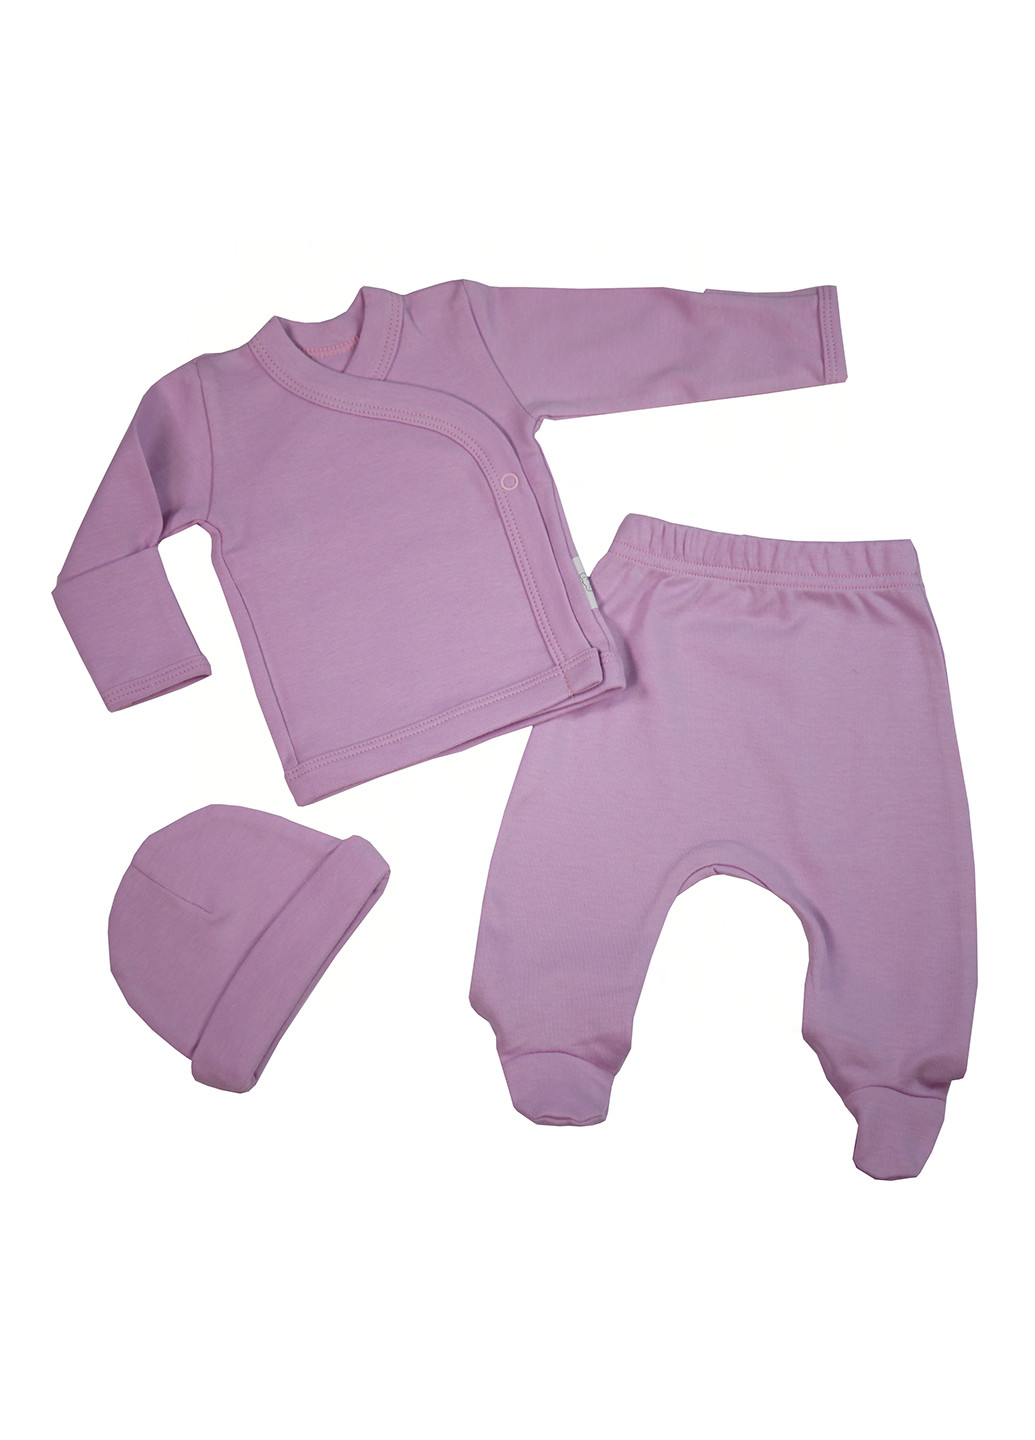 Фиолетовый демисезонный комплект (распашонка, ползунки, шапка) Tobbi